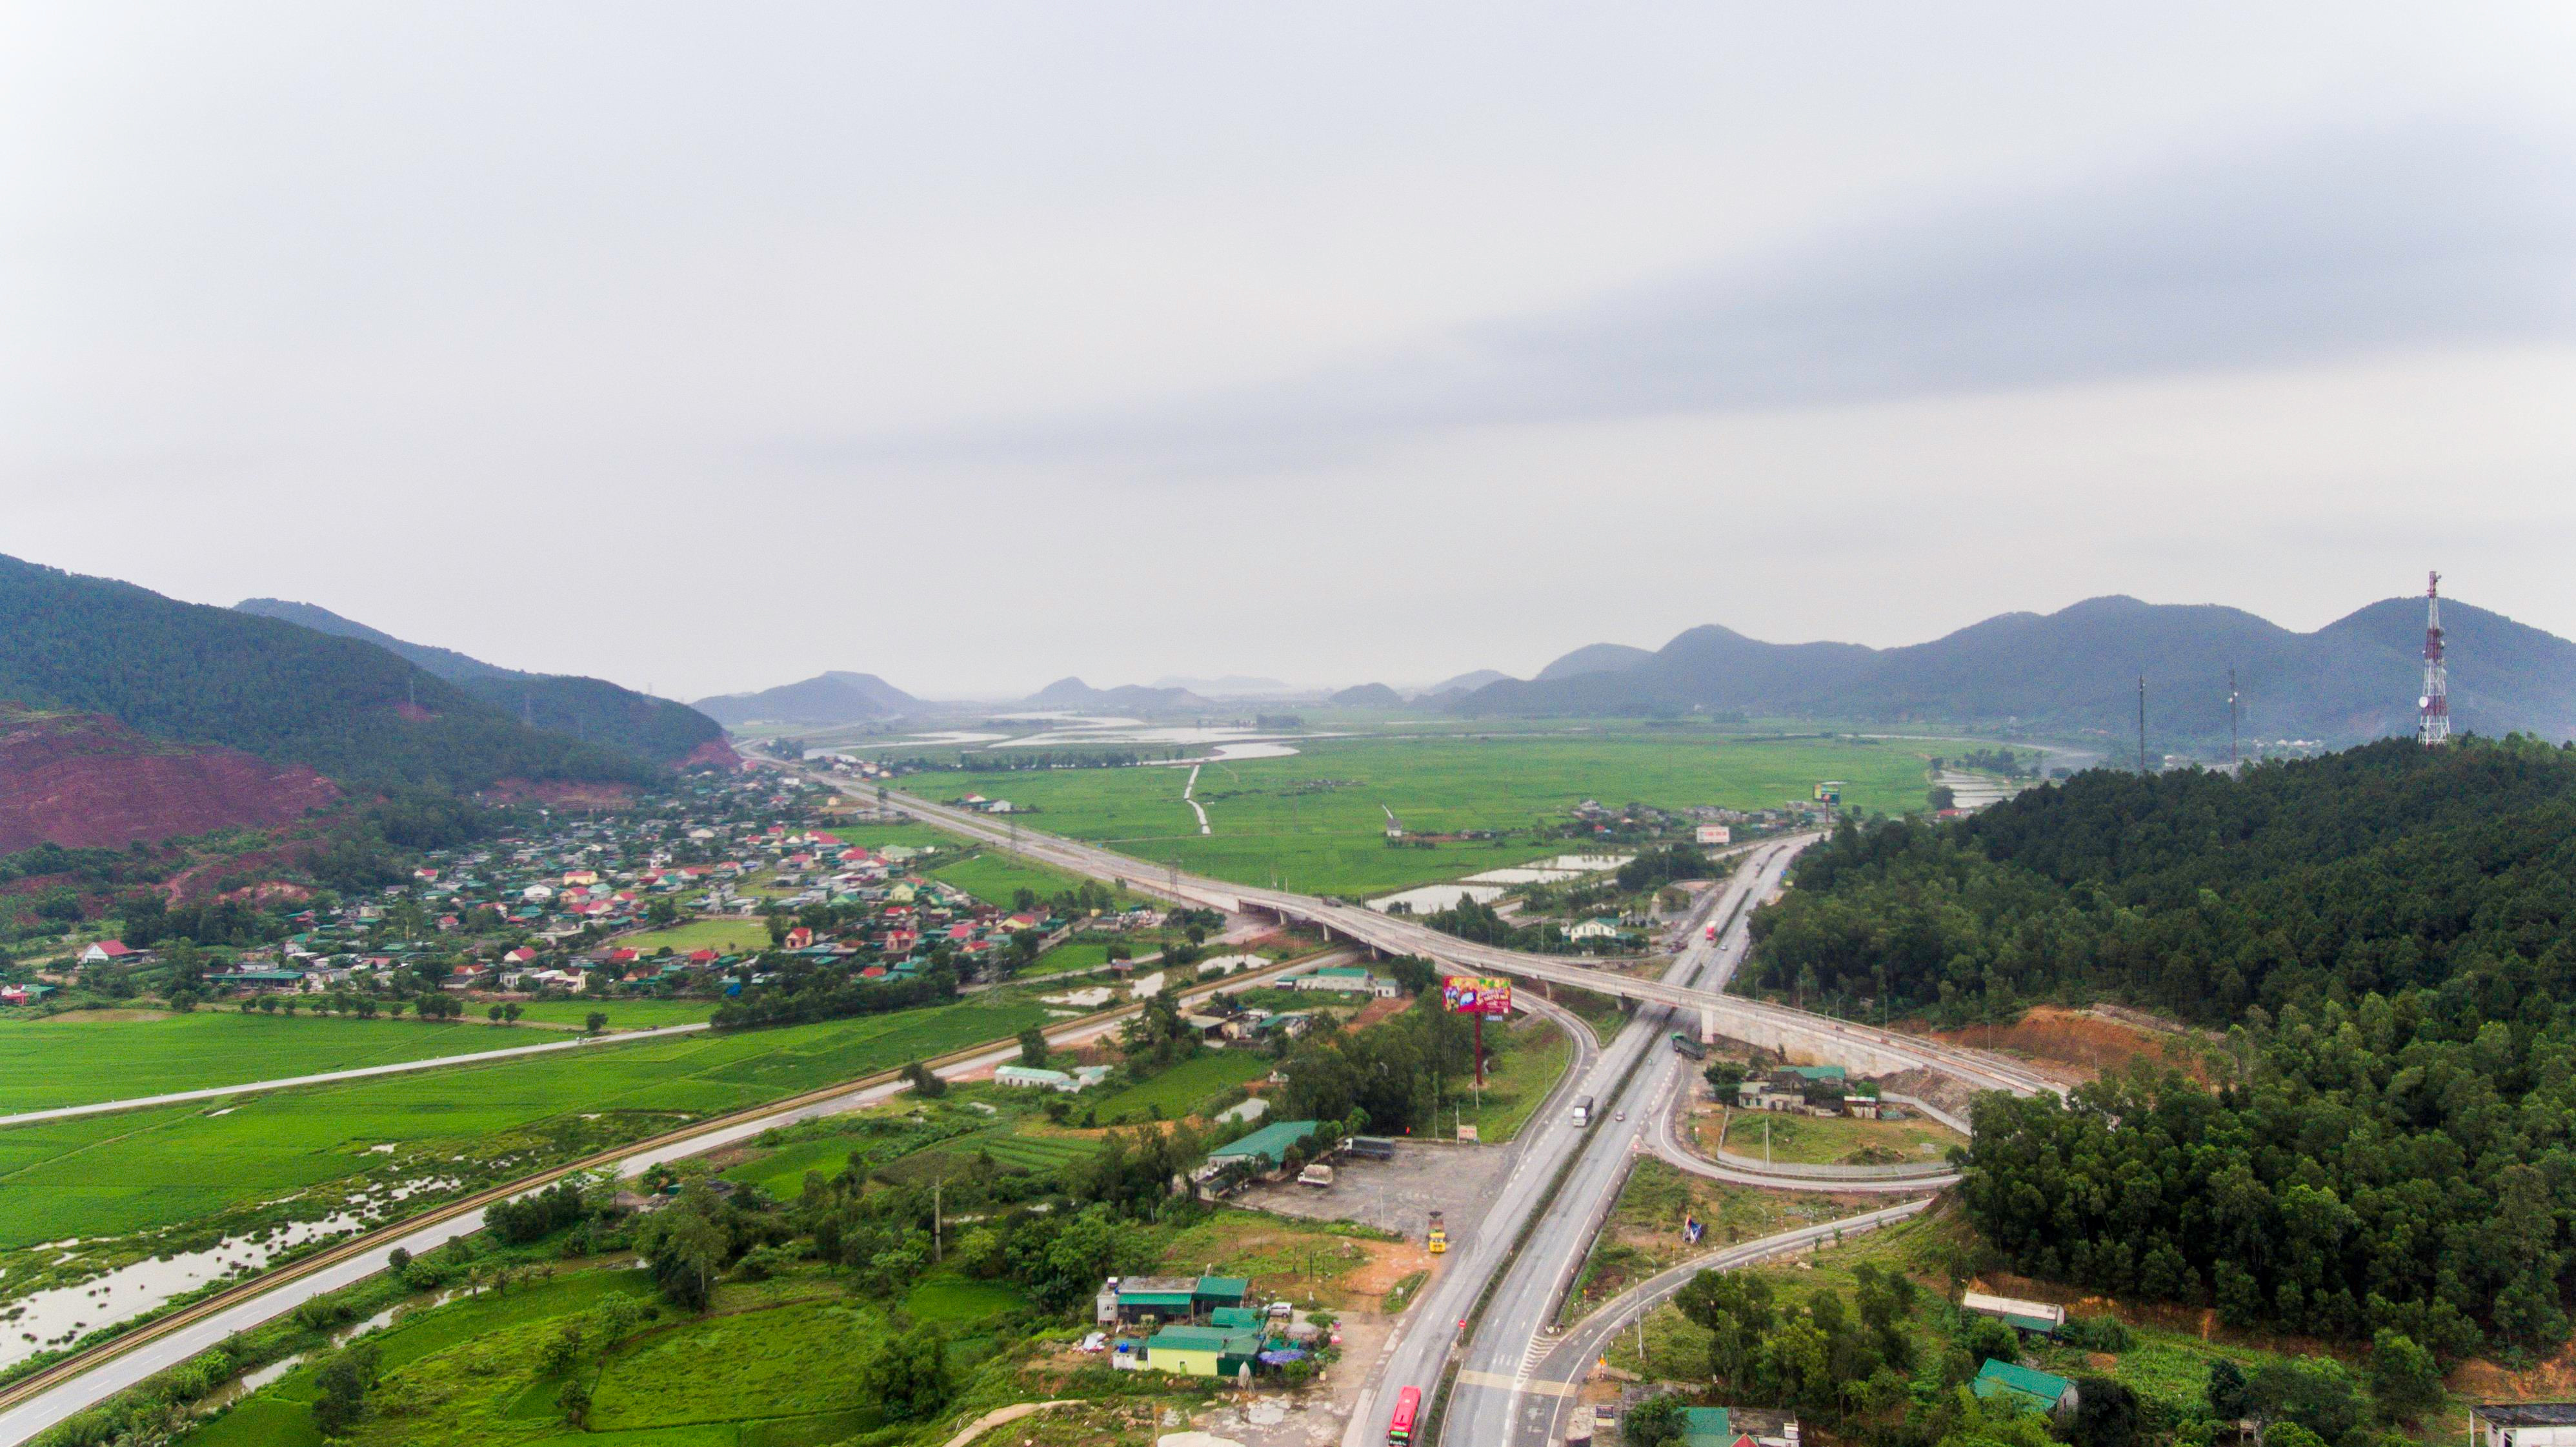 Hạ tầng giao thông của Nghệ An ngày càng hoàn thiện, phục vụ đắc lực cho phát triển kinh tế - xã hội.  Ảnh: Thành Cường